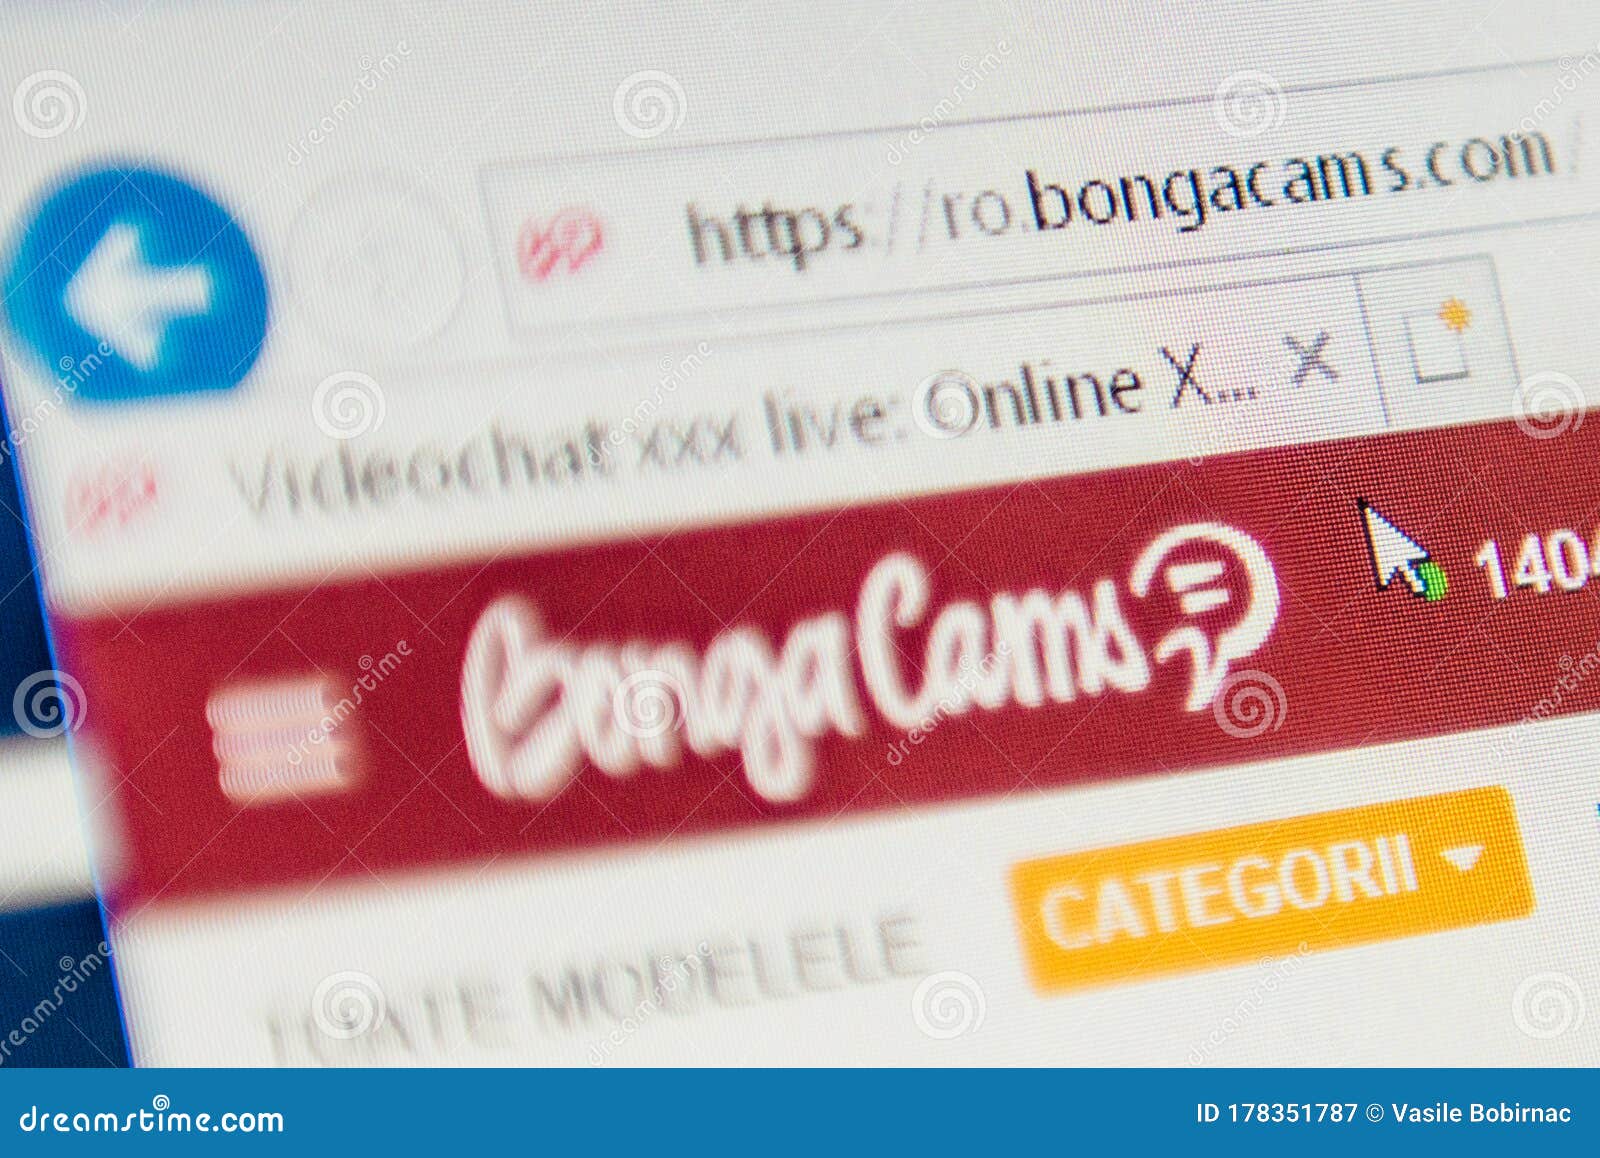 Cam bonga sex BongaCams